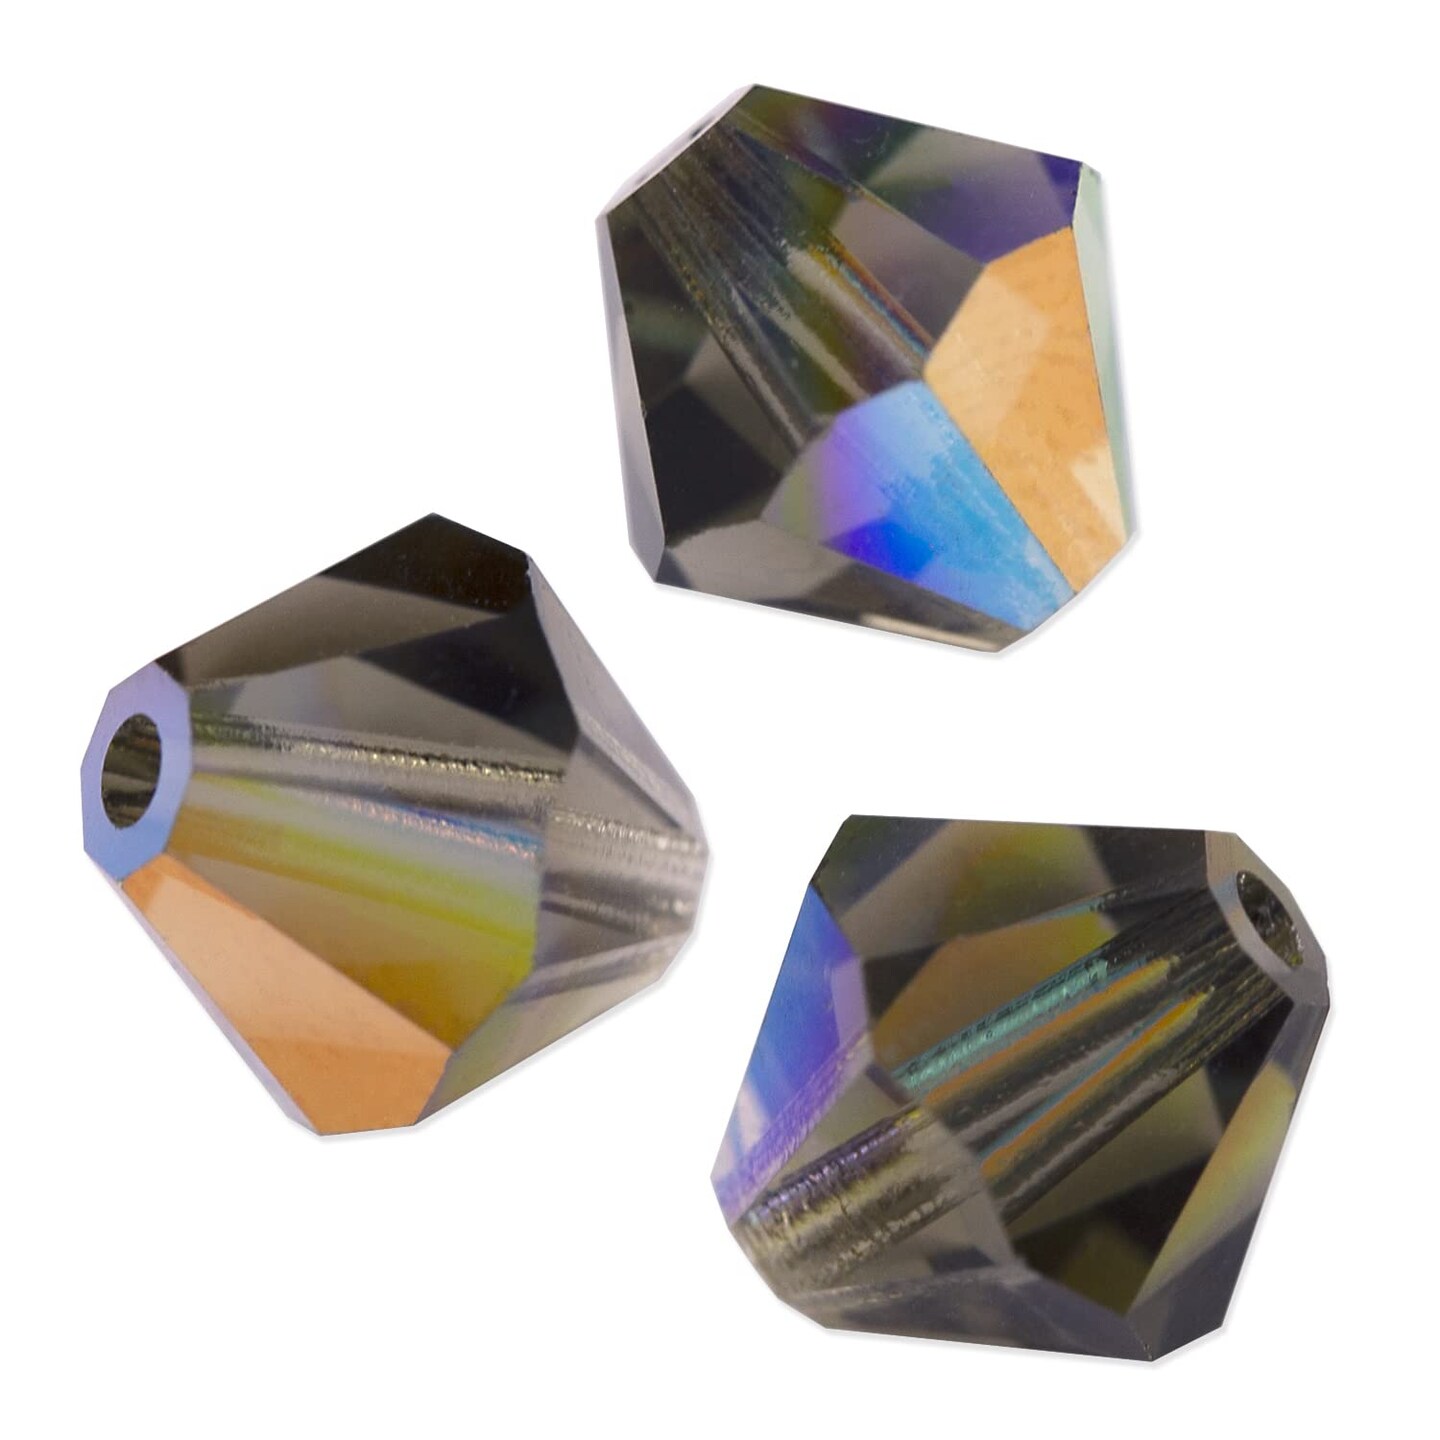 PRECIOSA Crystals - BEADS 